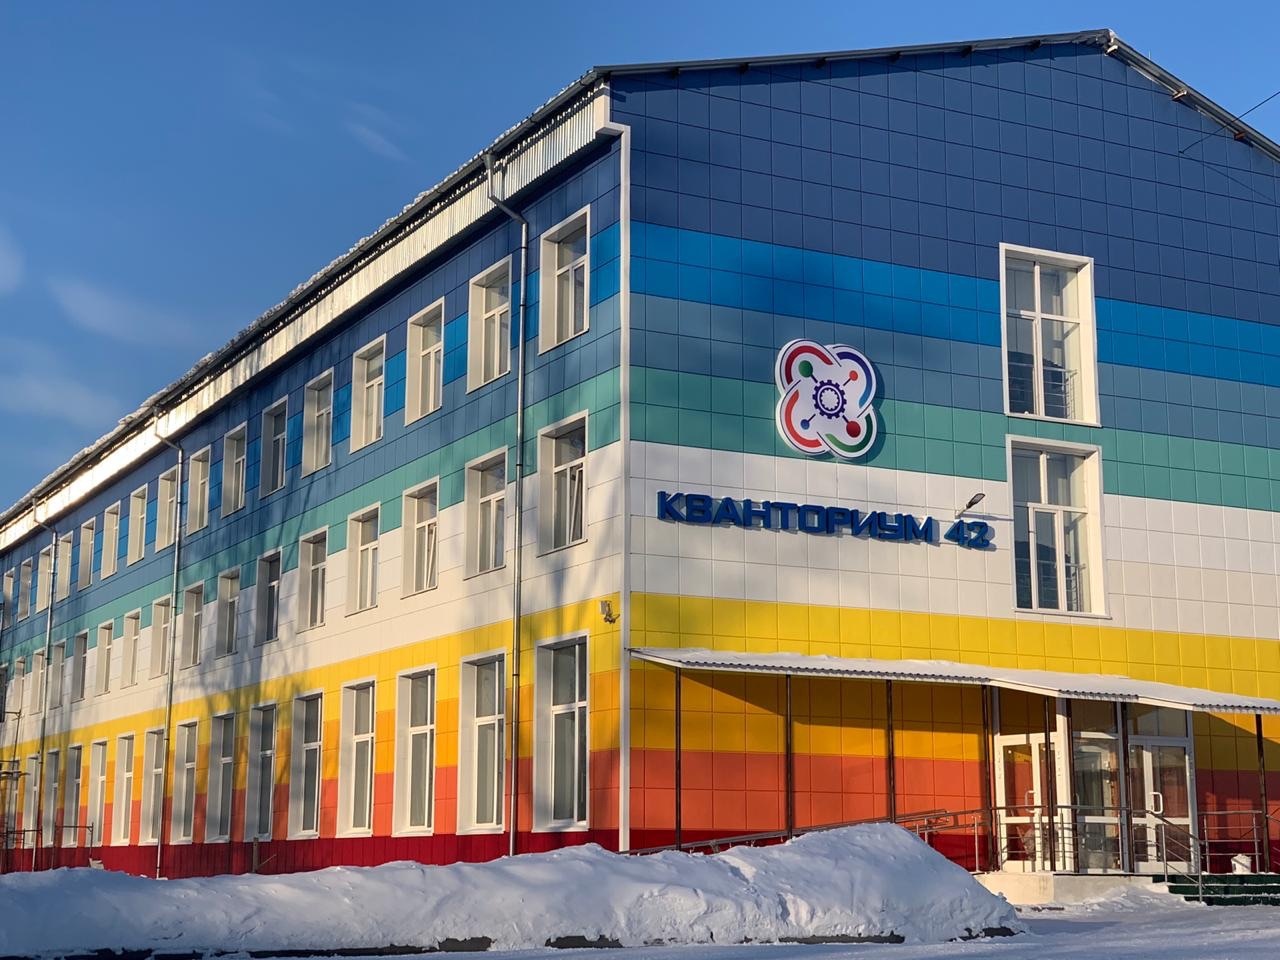 Первый в Кузбассе детский технопарк "Кванториум 42" откроется в Кемерове